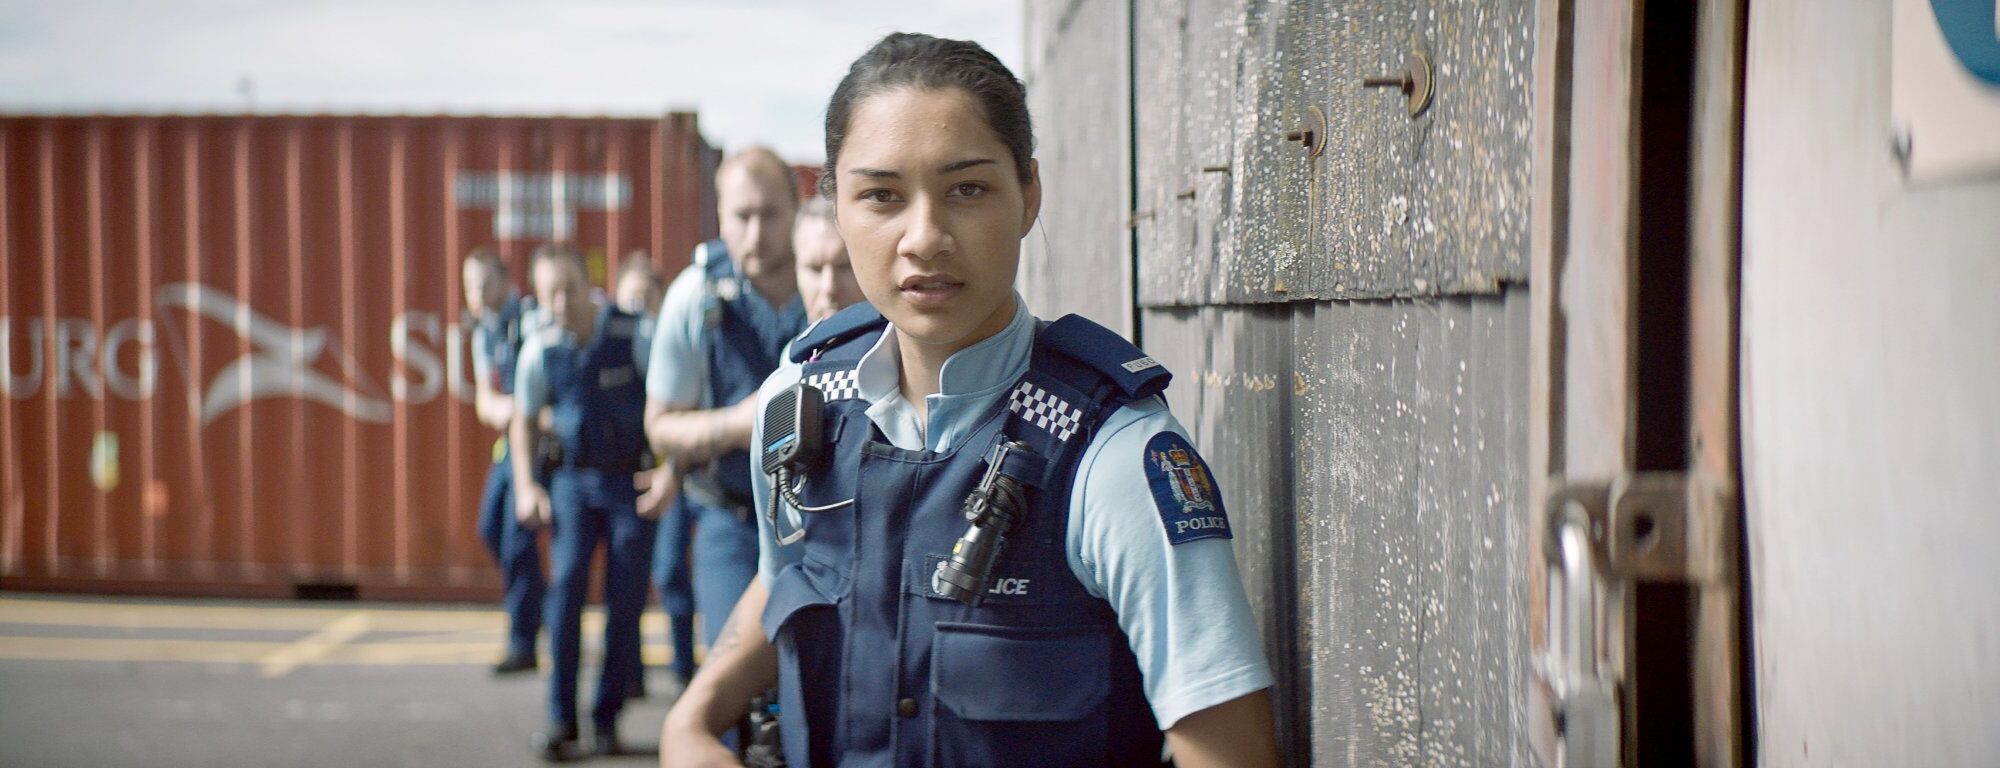 NZ Police Recruitment Advertisement